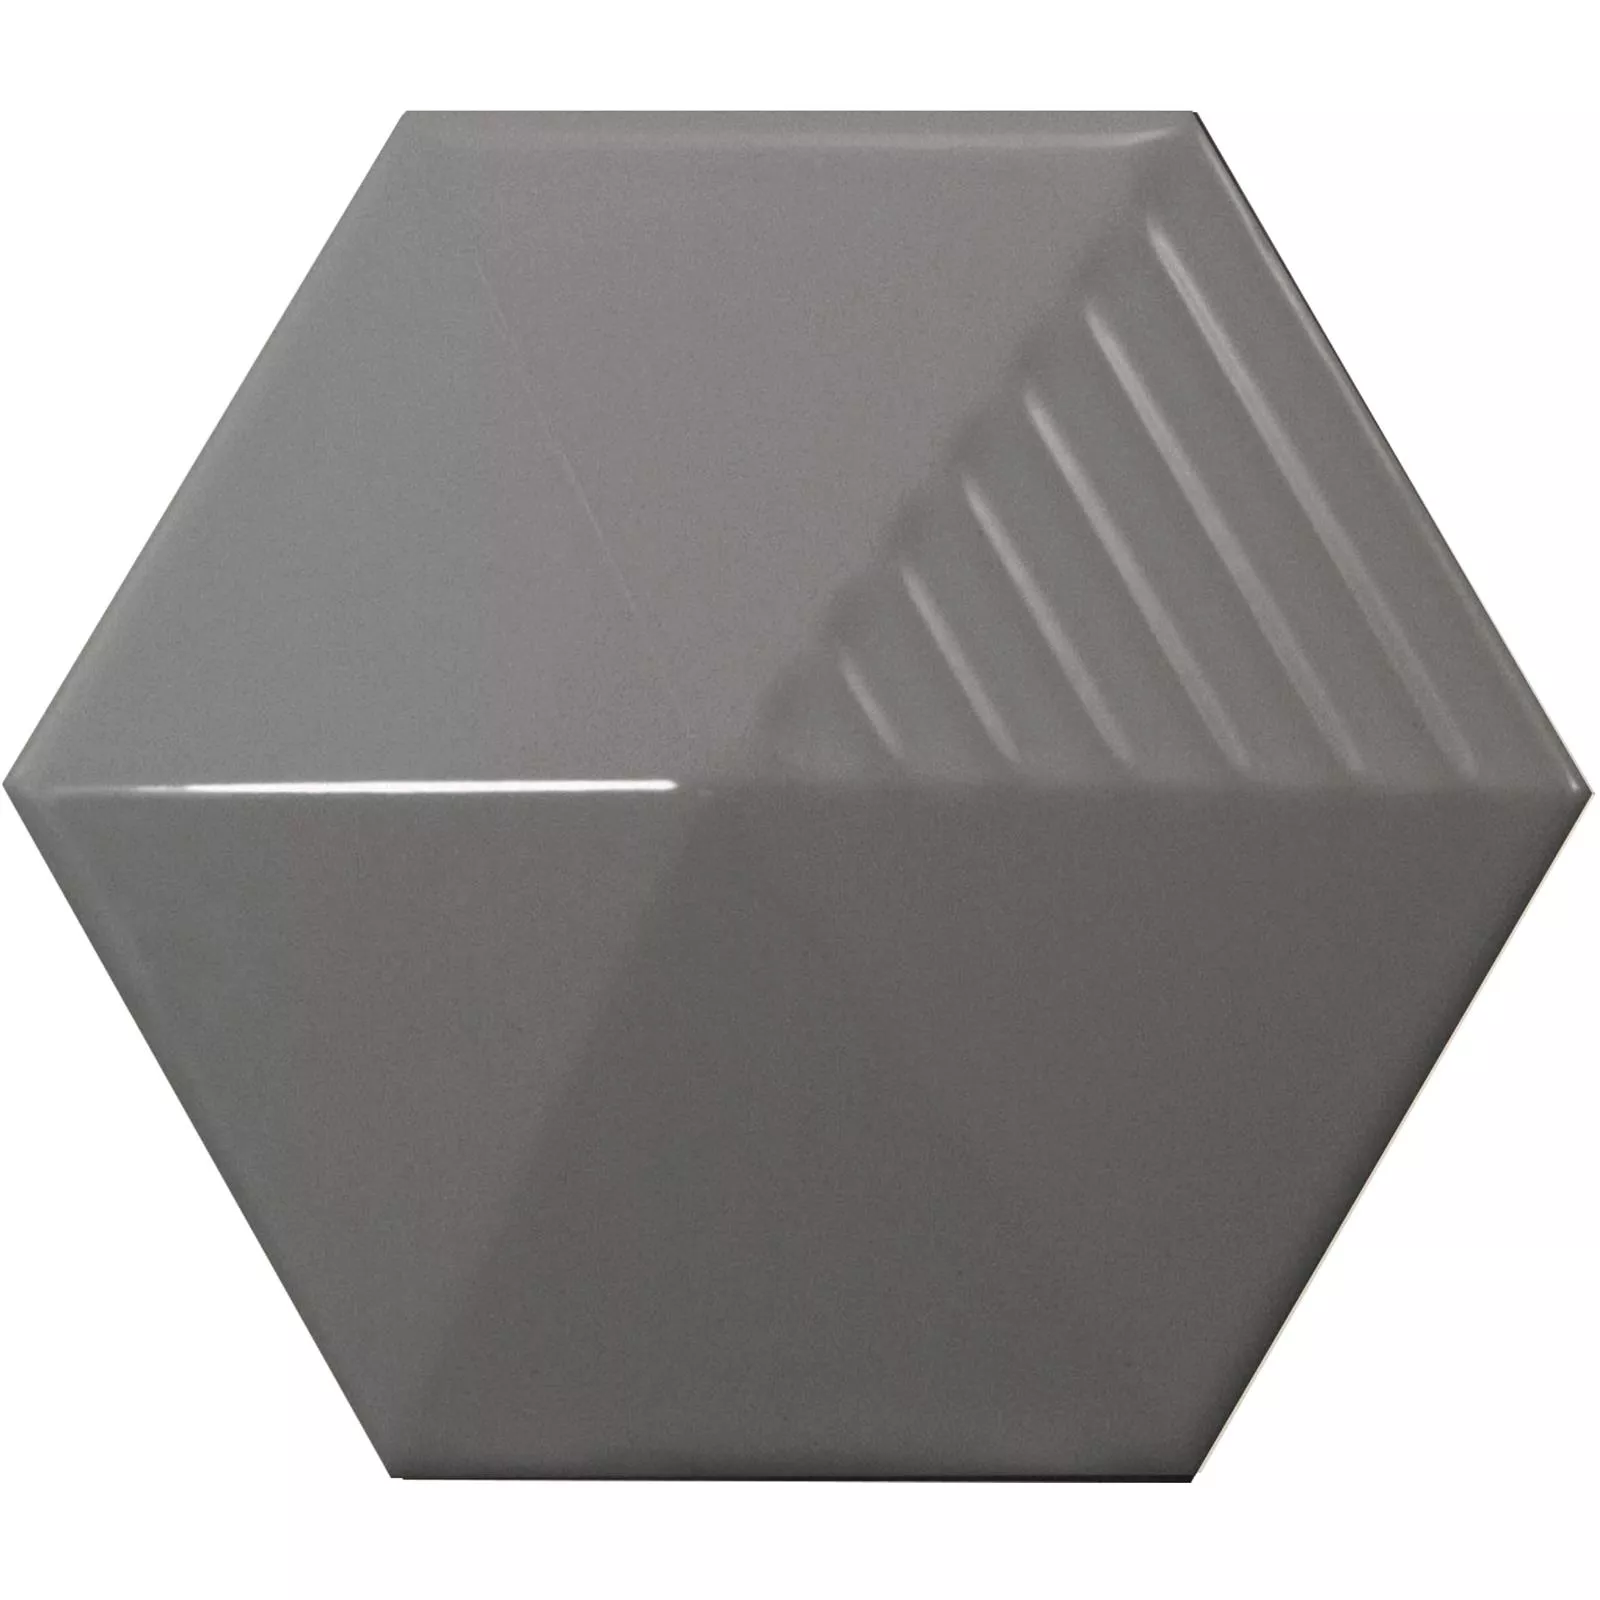 Sample Wall Tiles Rockford 3D Hexagon 12,4x10,7cm Grey